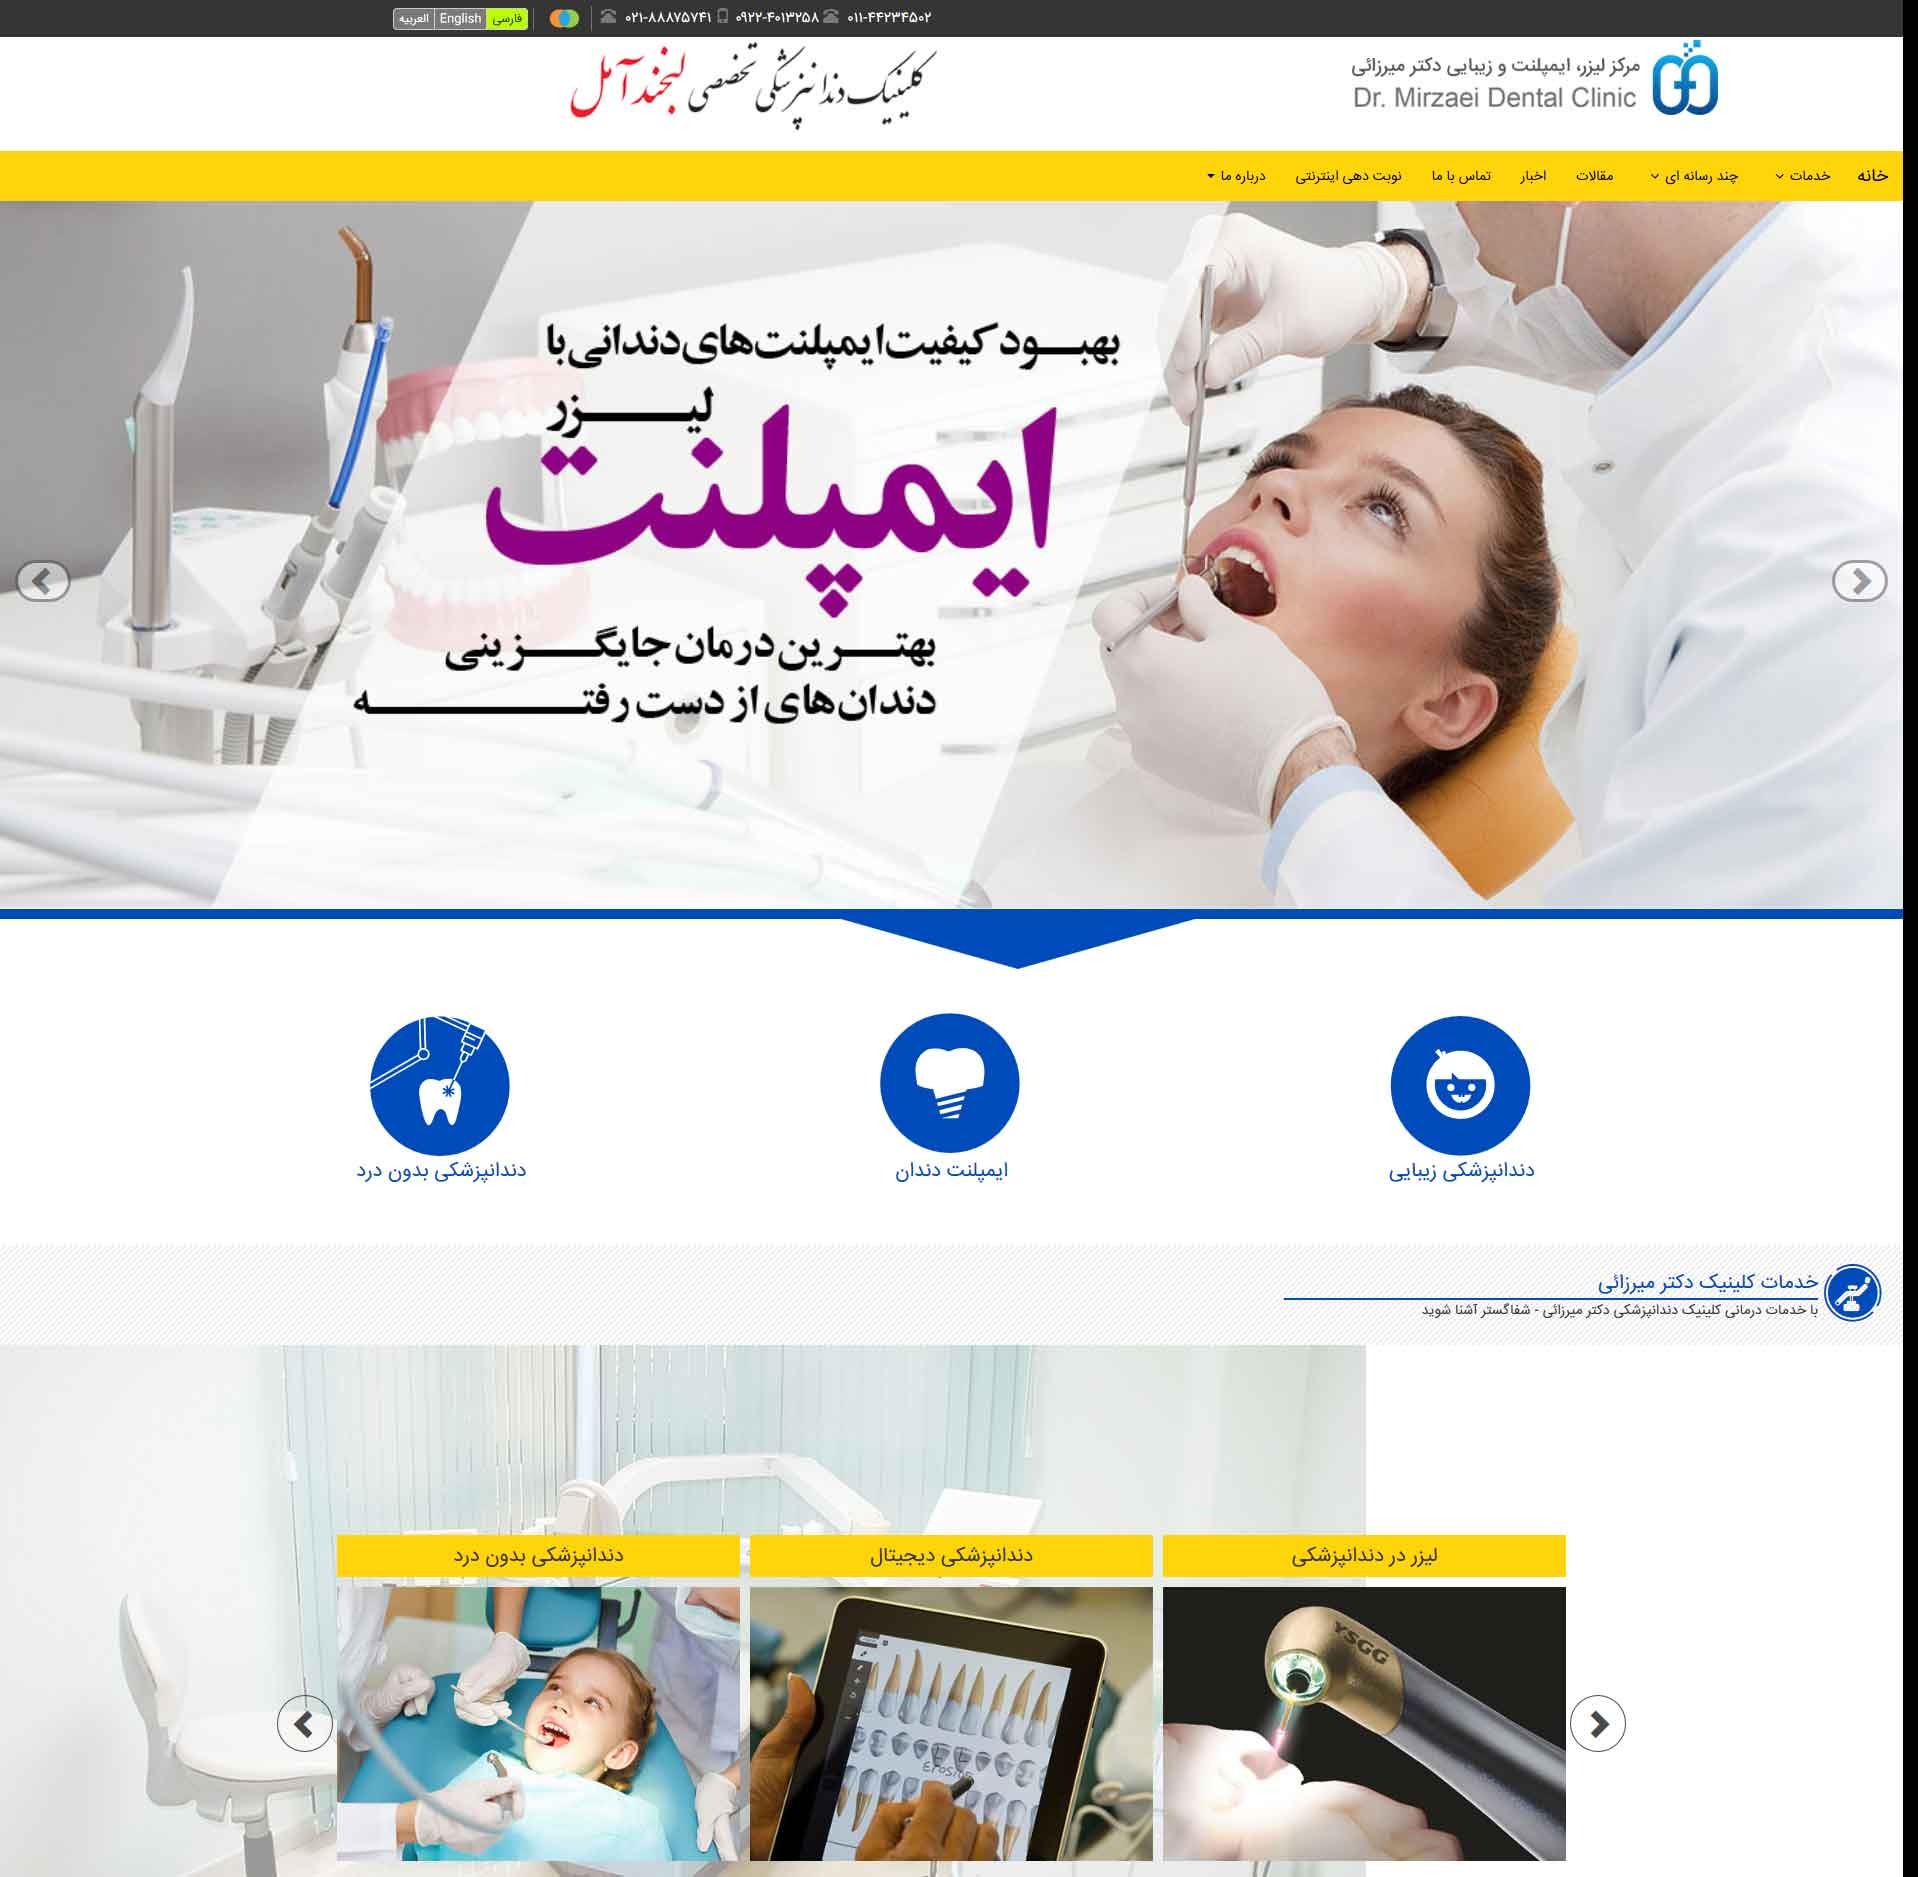 دکتر علیرضا میرزایی جراح دندانپزشک